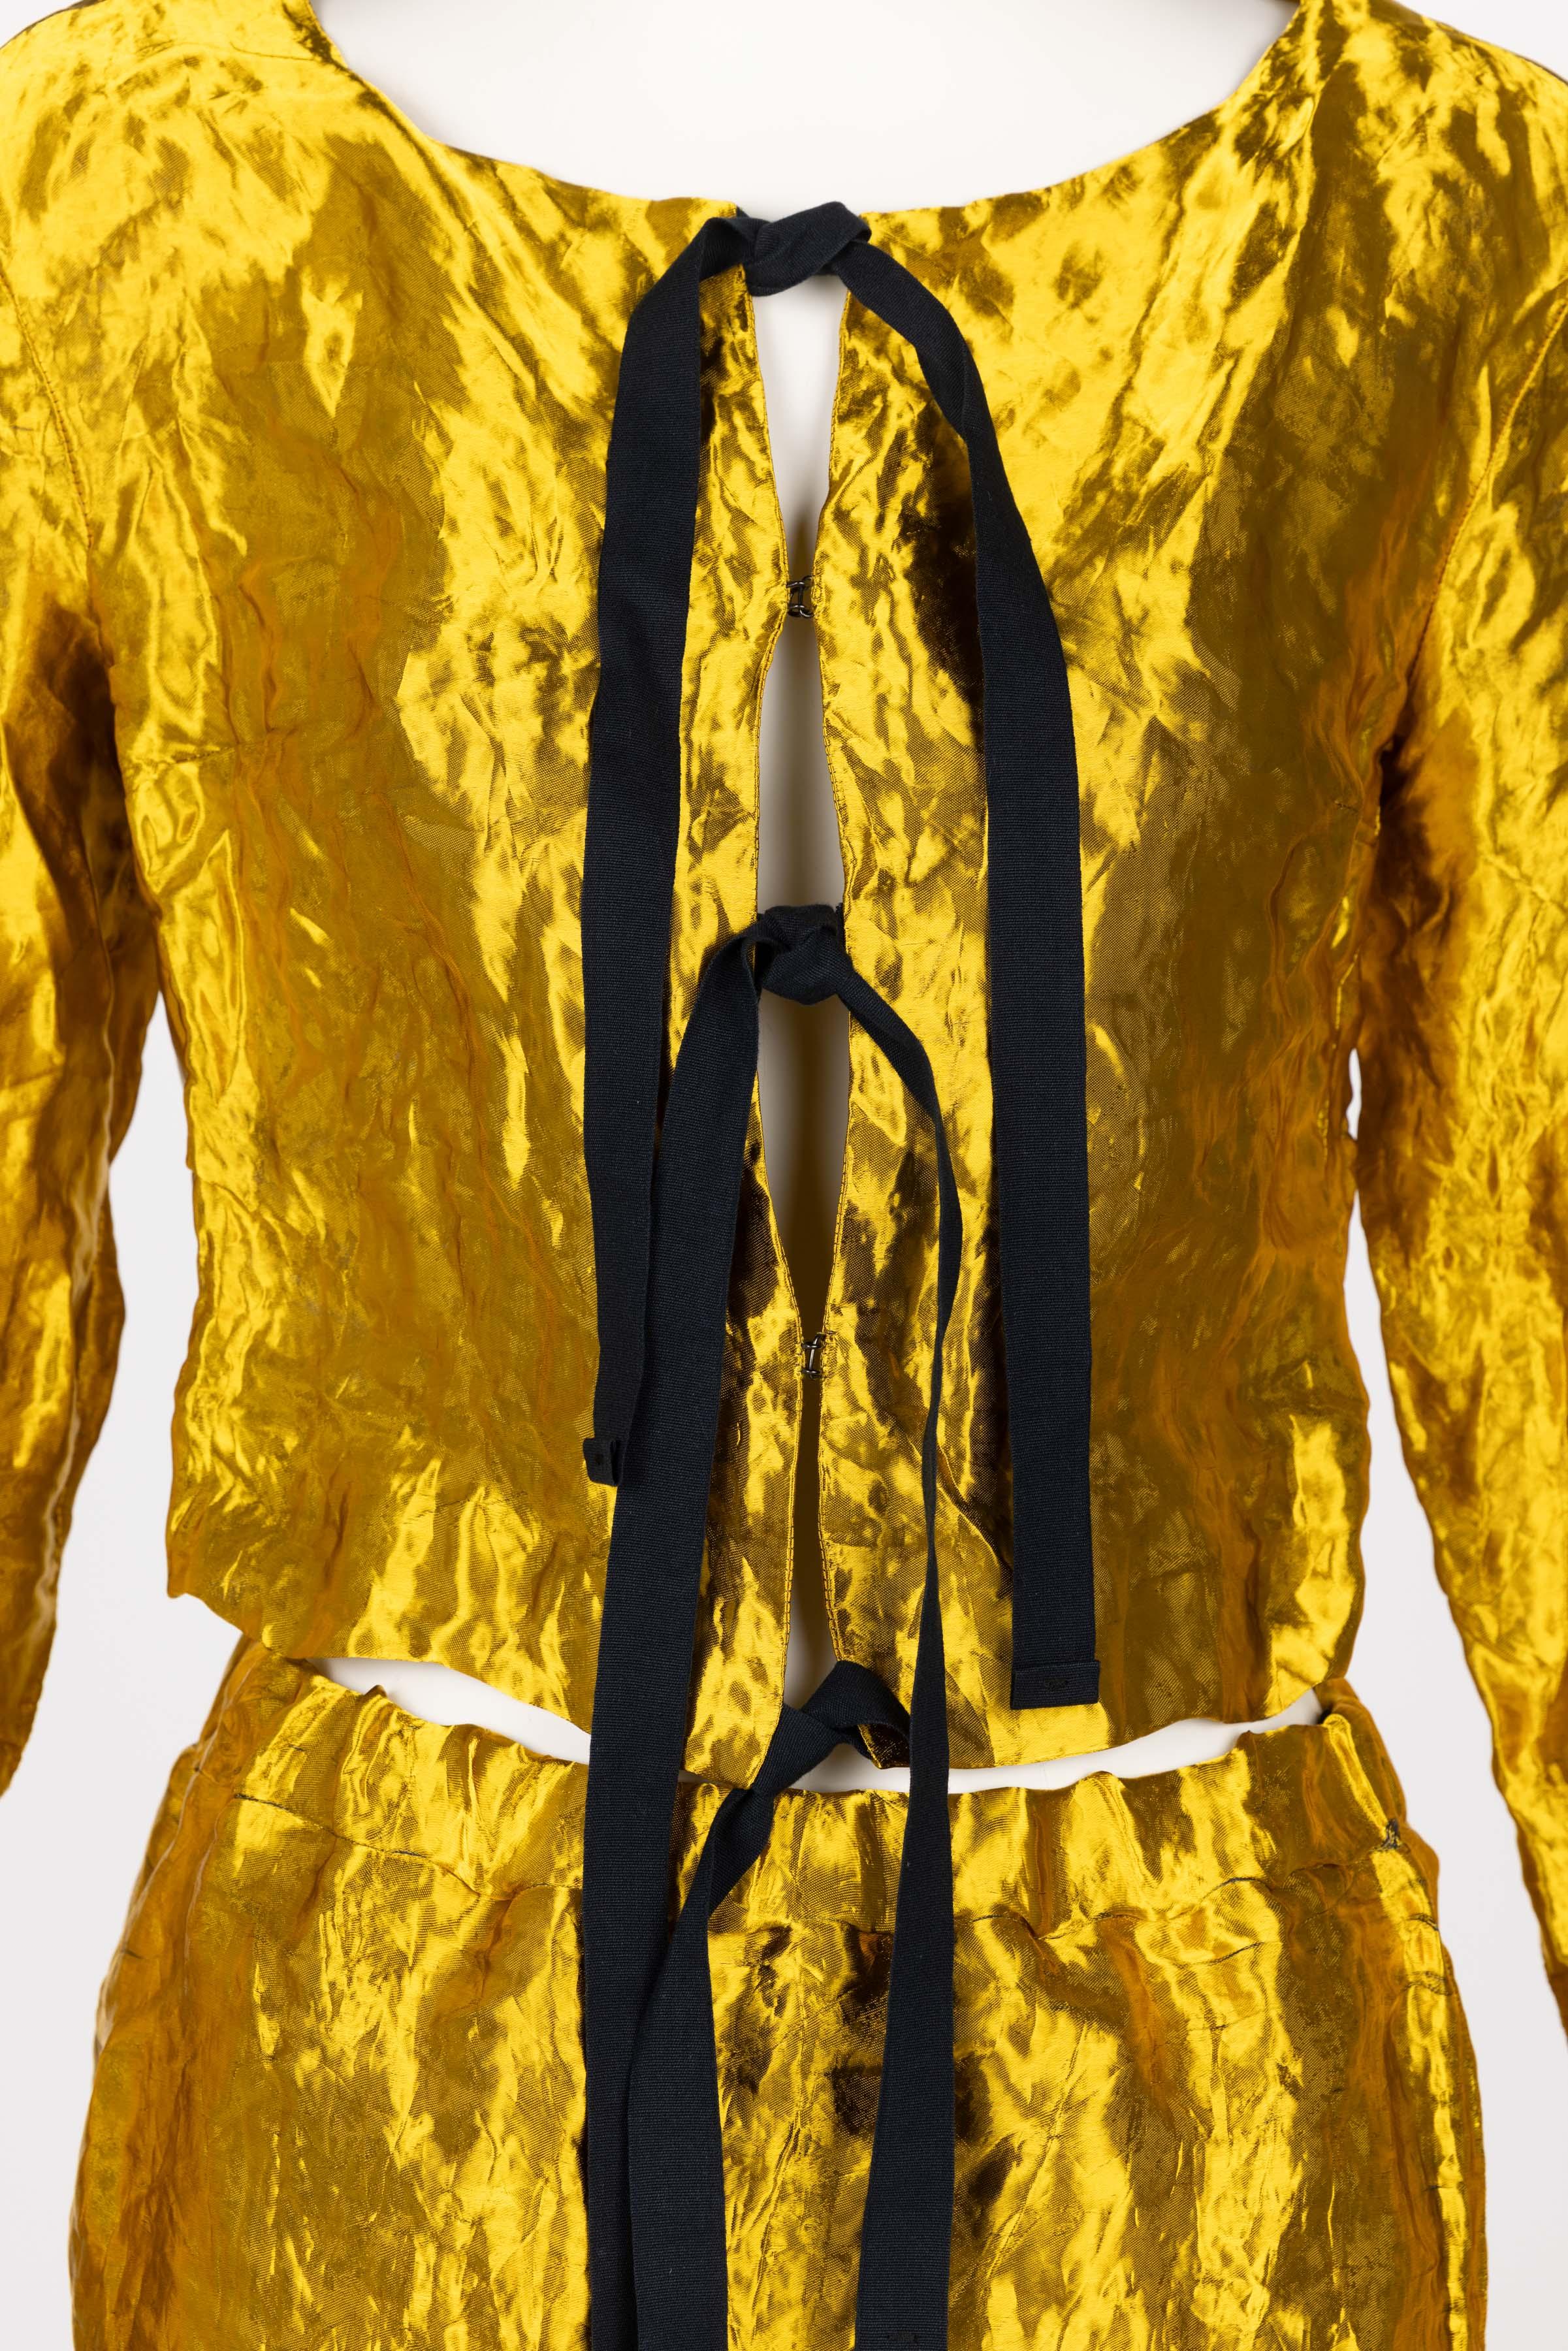 Prada Gold Metal Jacket Top & Skirt Set Spring 2009 4